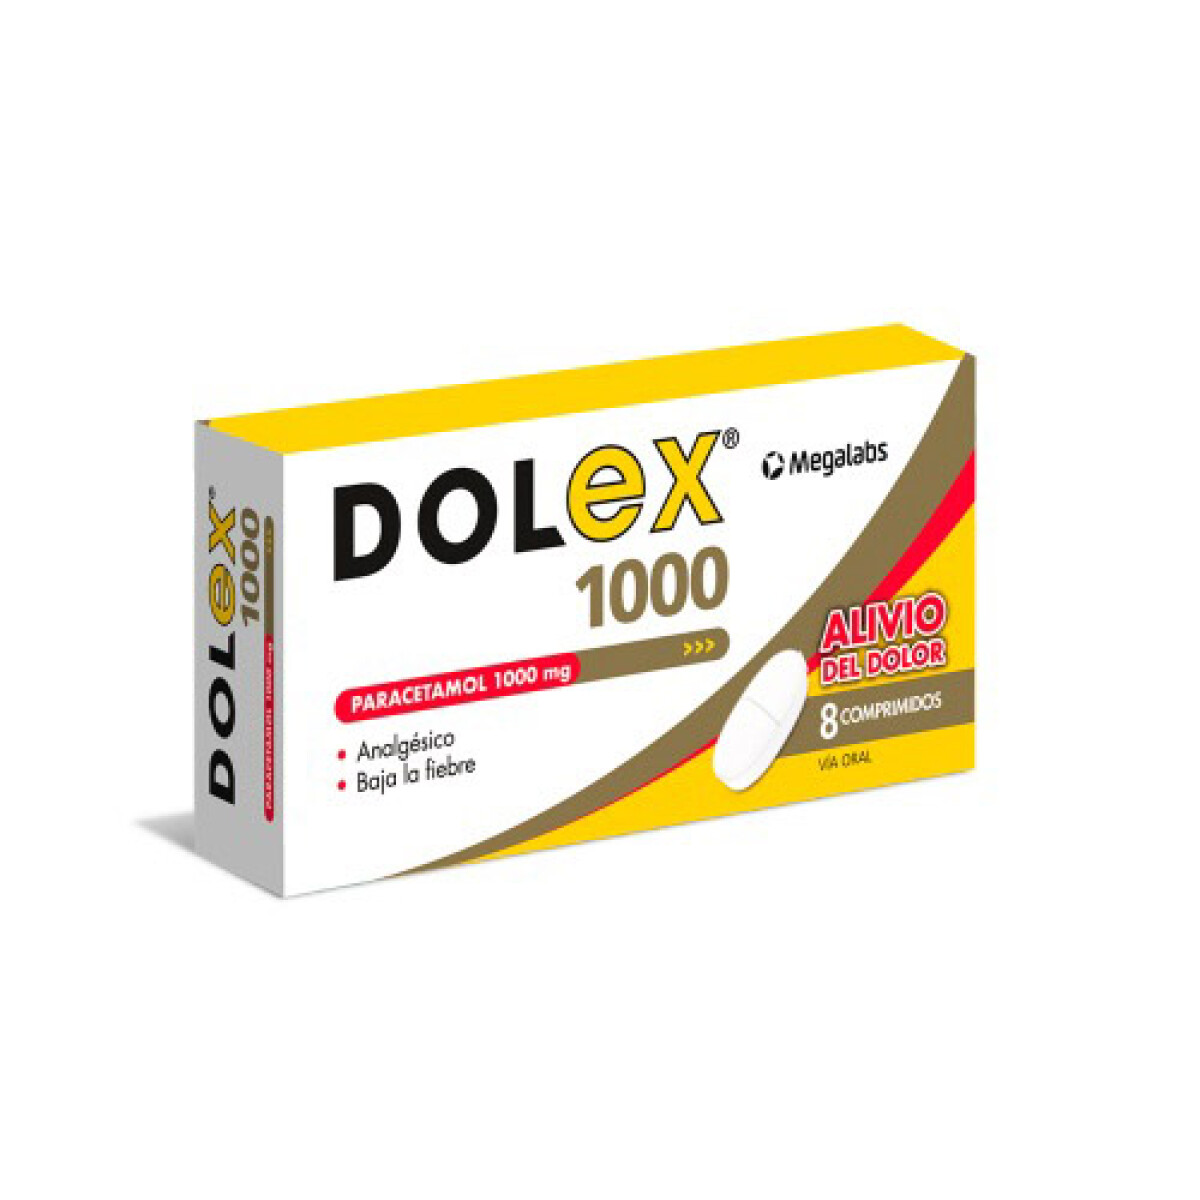 Dolex 1000 x 8 COM 